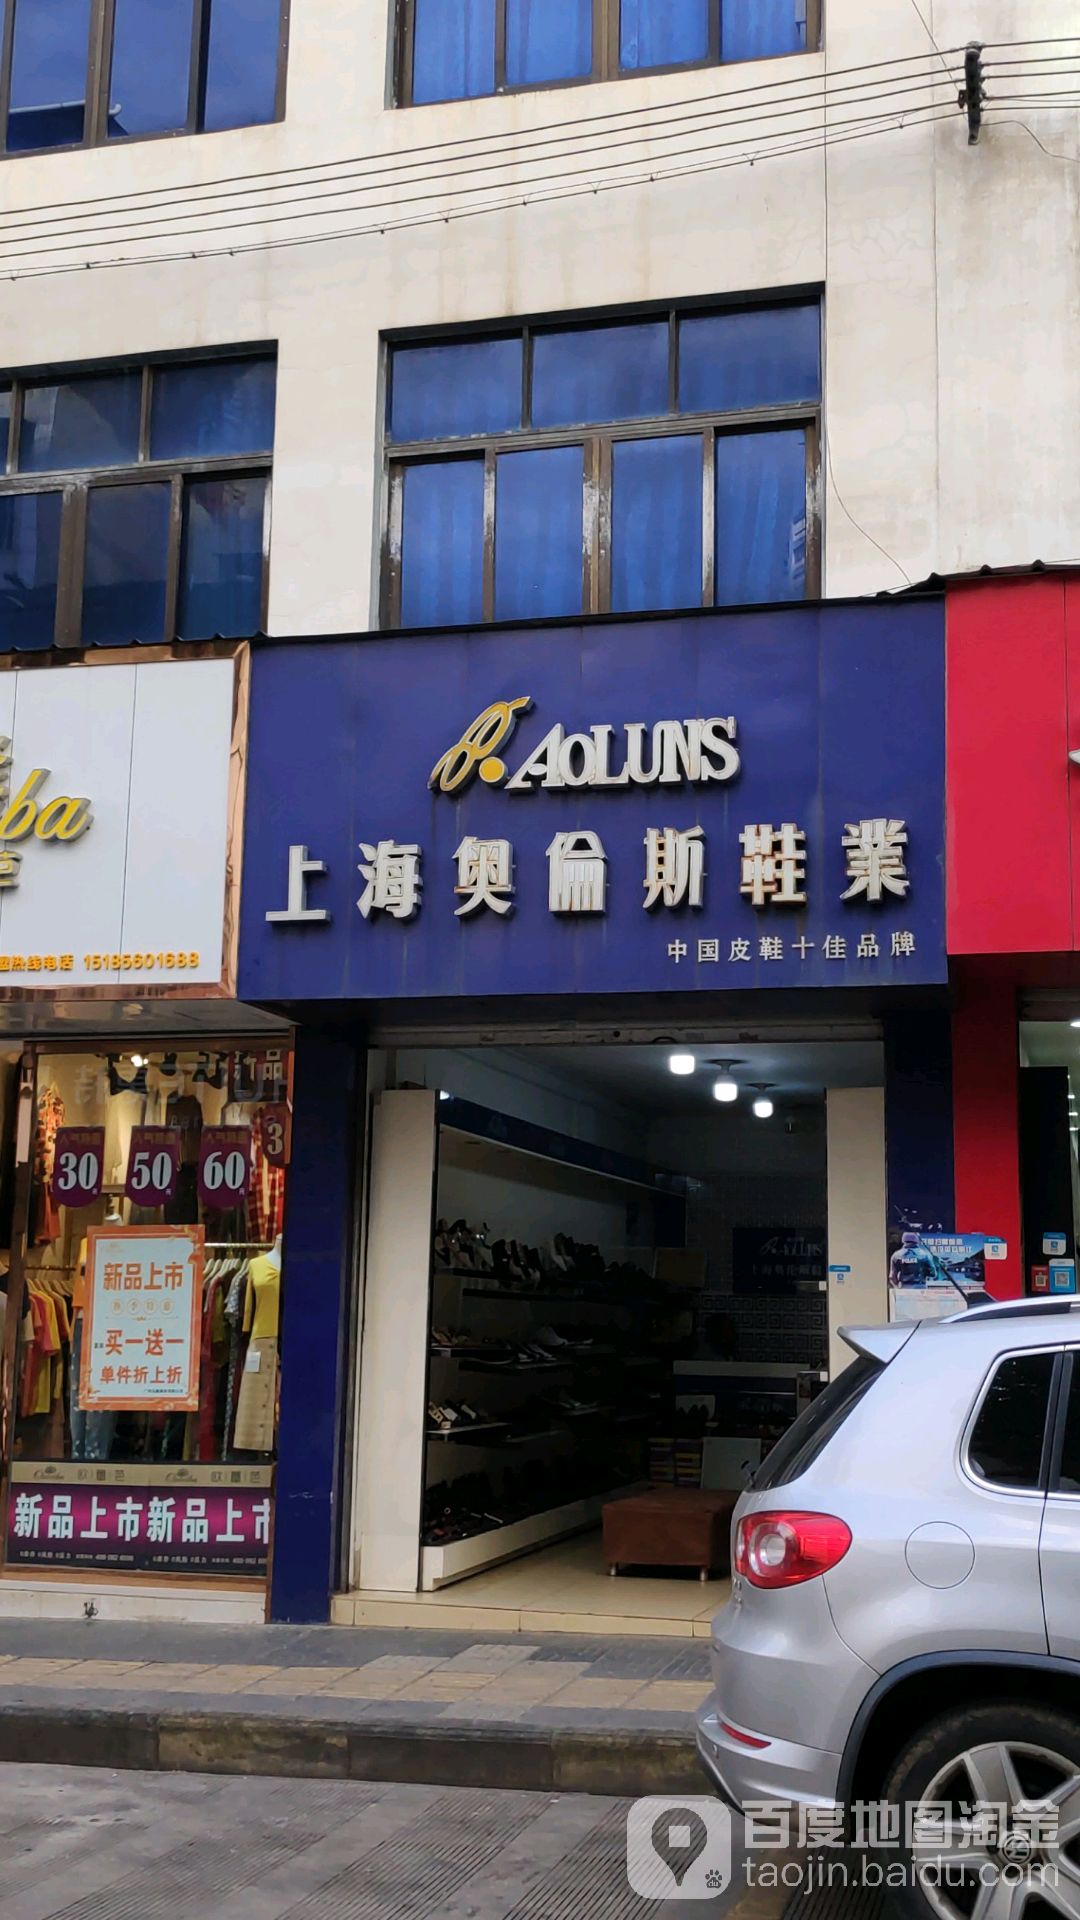 上海奥伦斯鞋业(南街店)